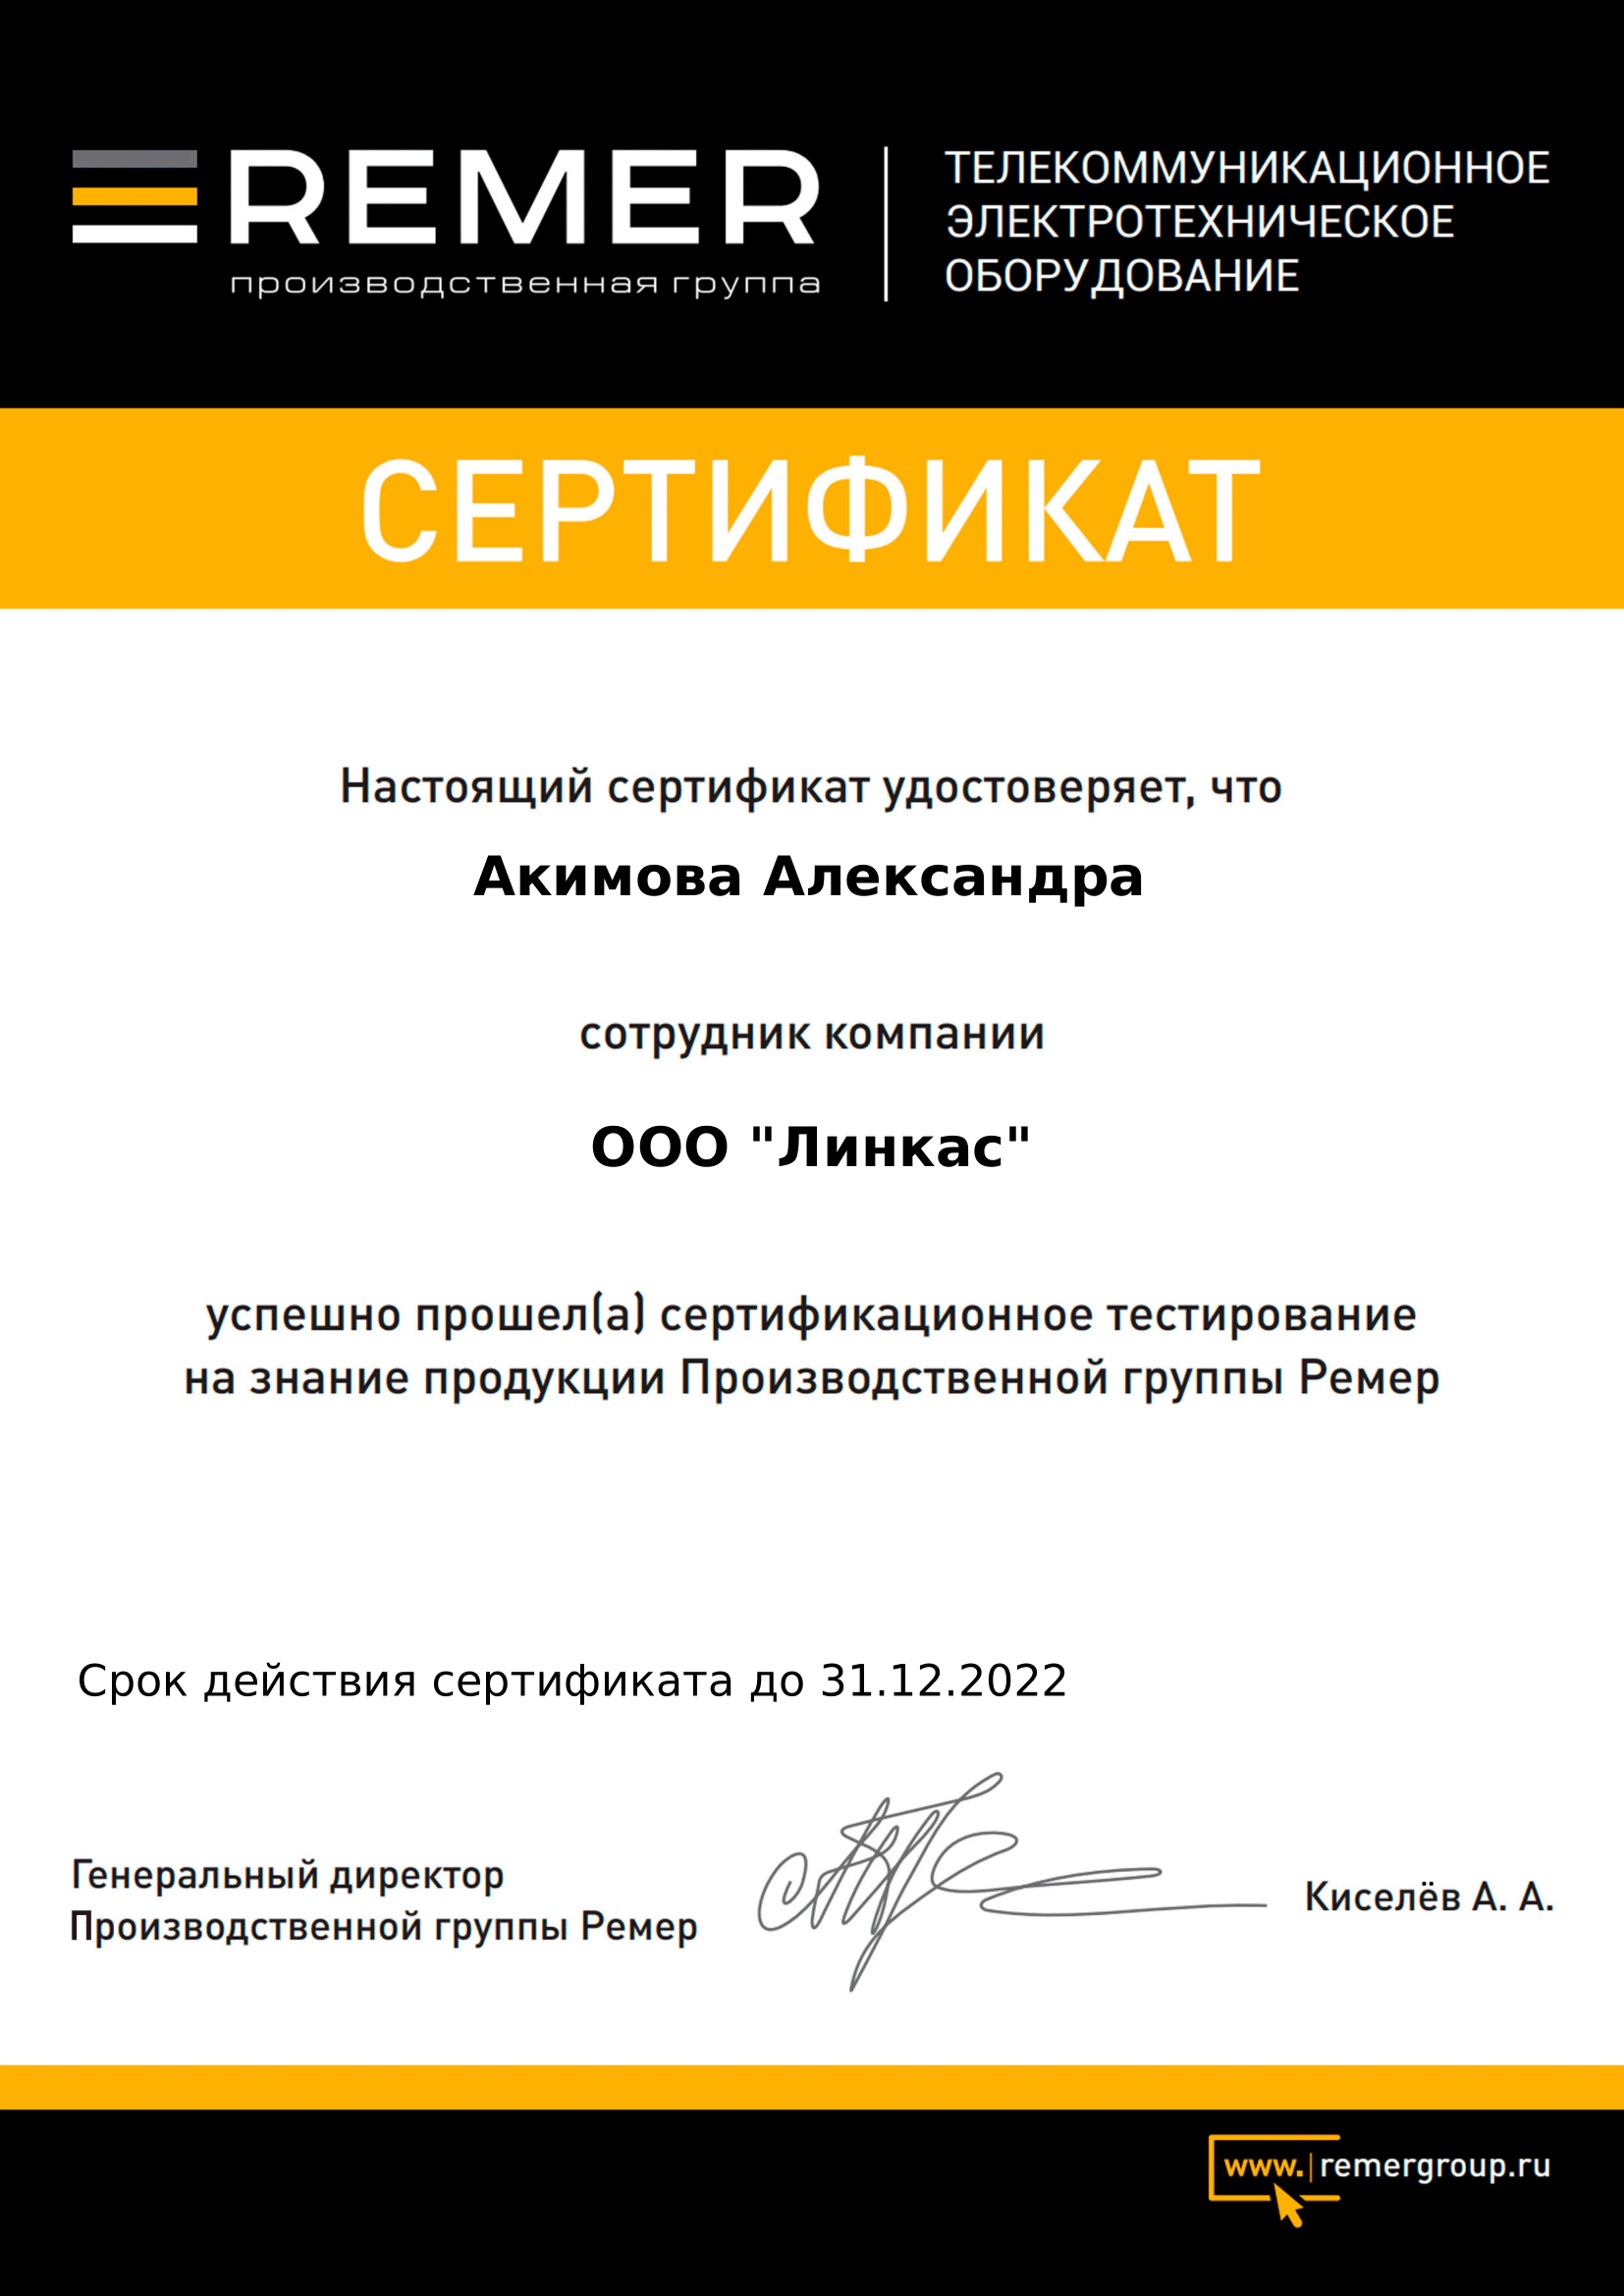 Сертификат партнера Remer Group